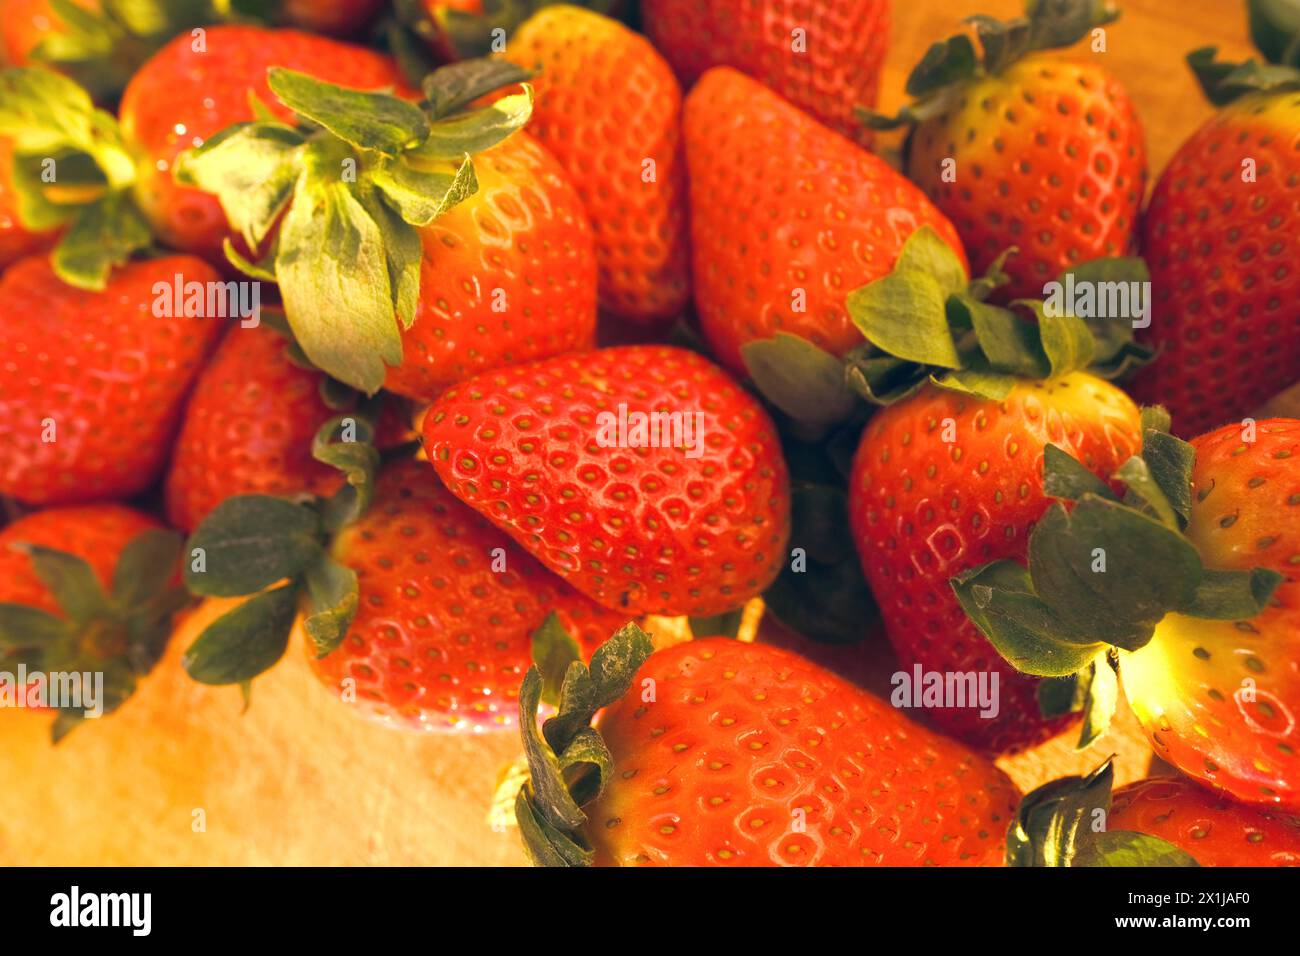 Appétissante fraises fraîches rouges mûres, Fragaria, sur planche de bois, rayons lumineux du soleil, fruits juteux de vitamine frais, concept riche de jardinage de récolte, ve Banque D'Images